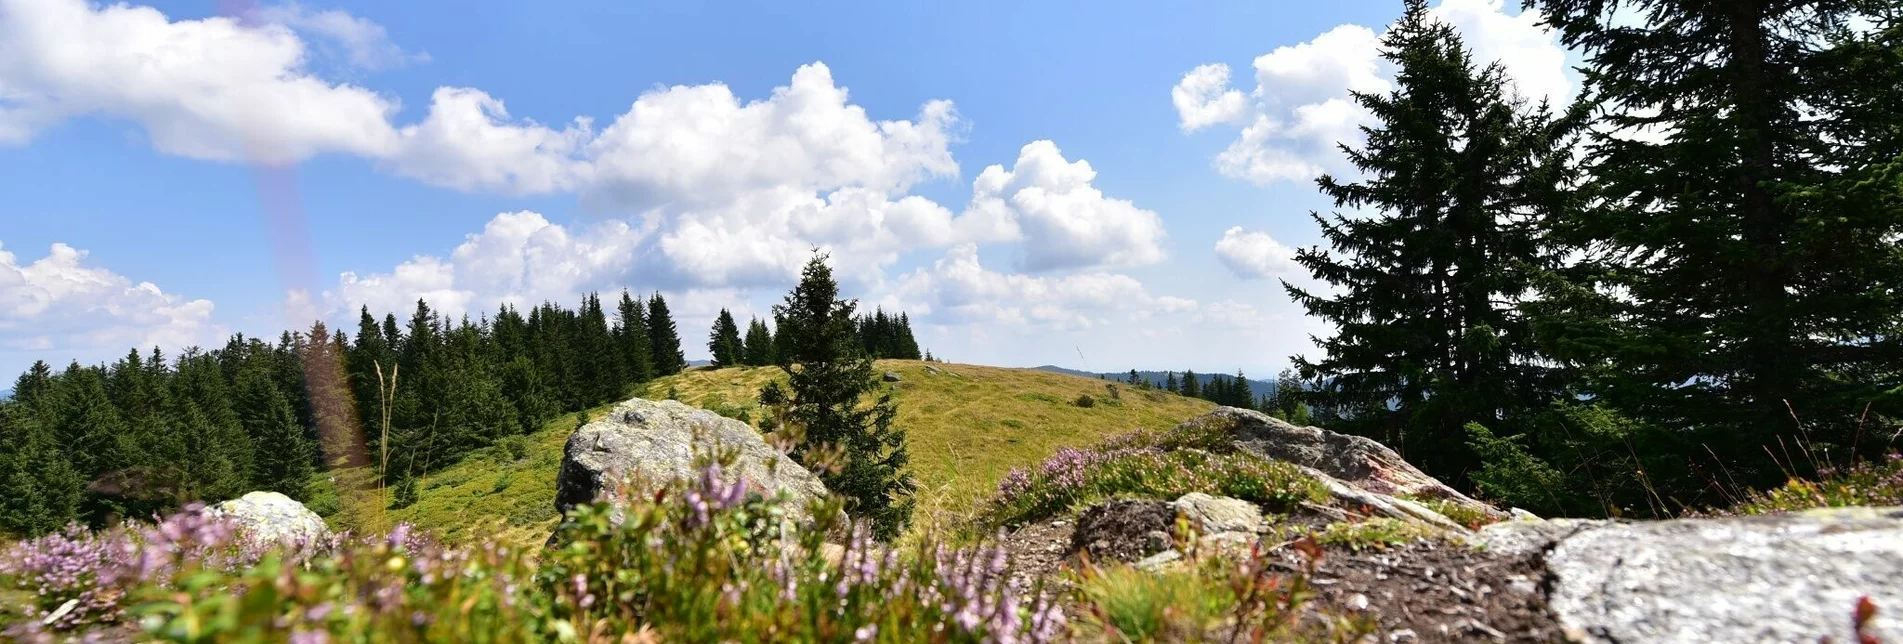 Hiking route Steinplan via Gaberl - Touren-Impression #1 | © Erlebnisregion Murtal